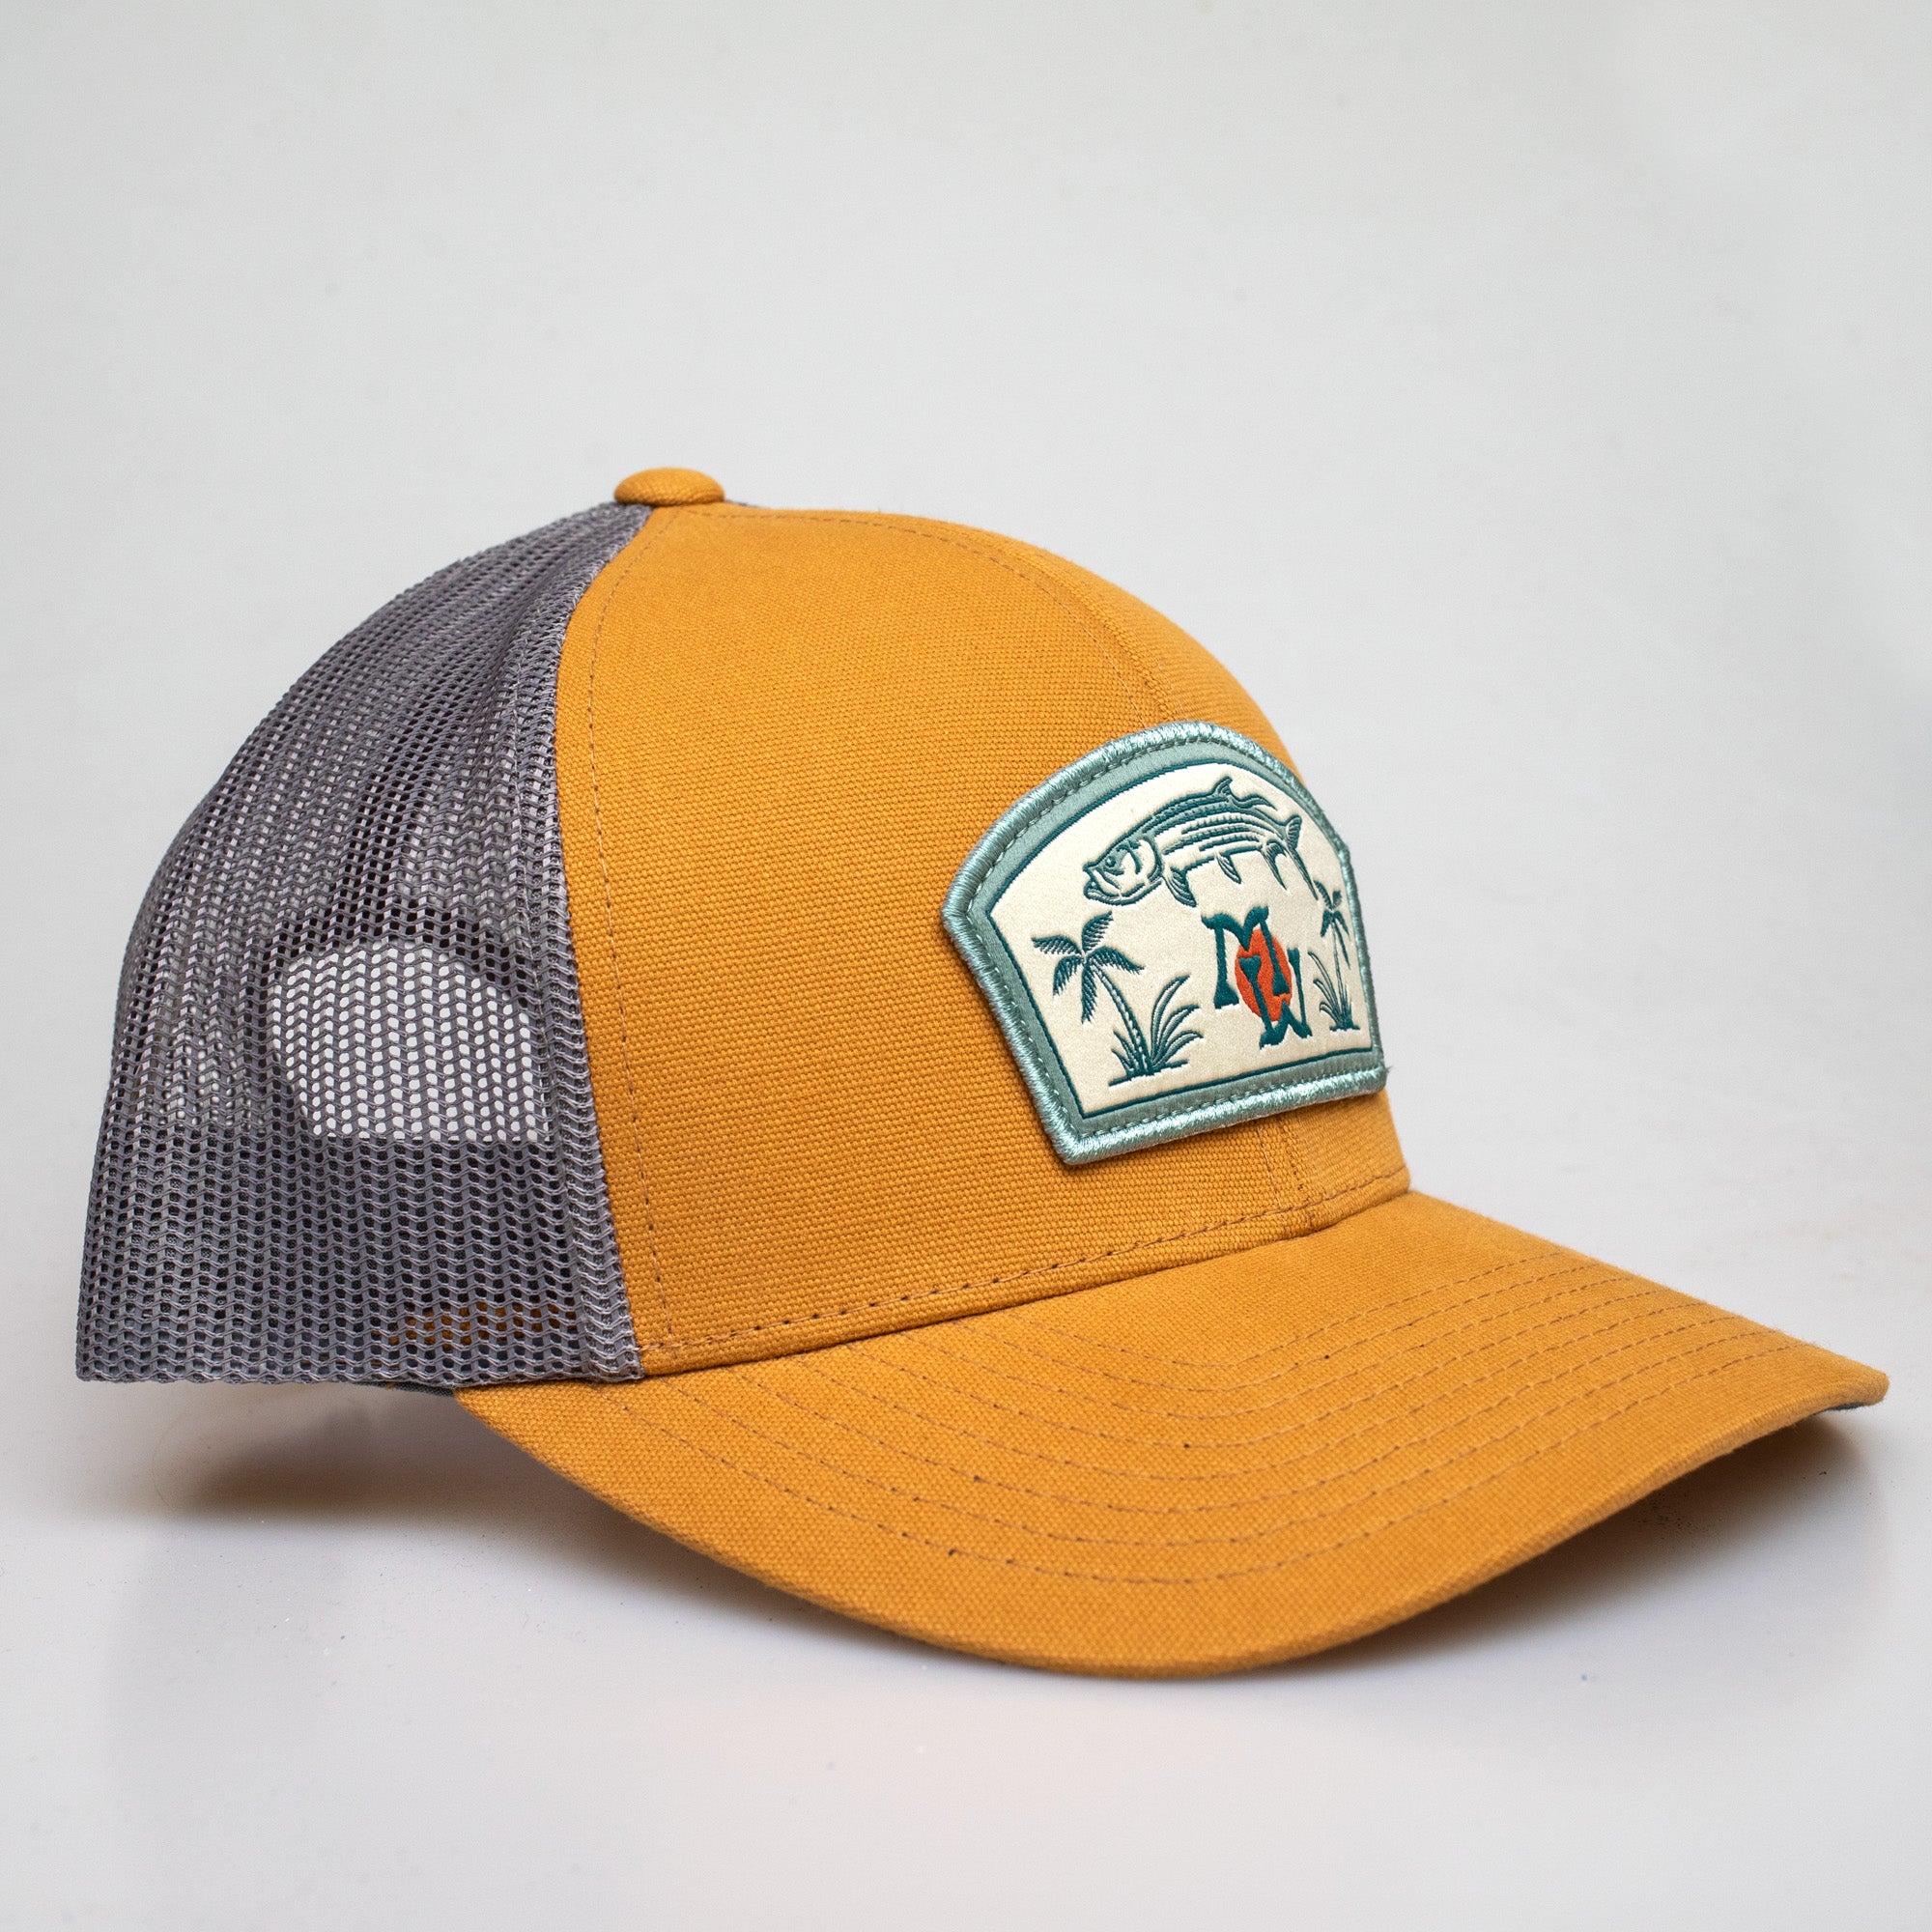 Marsh Wear Silver King Men's Trucker Hat